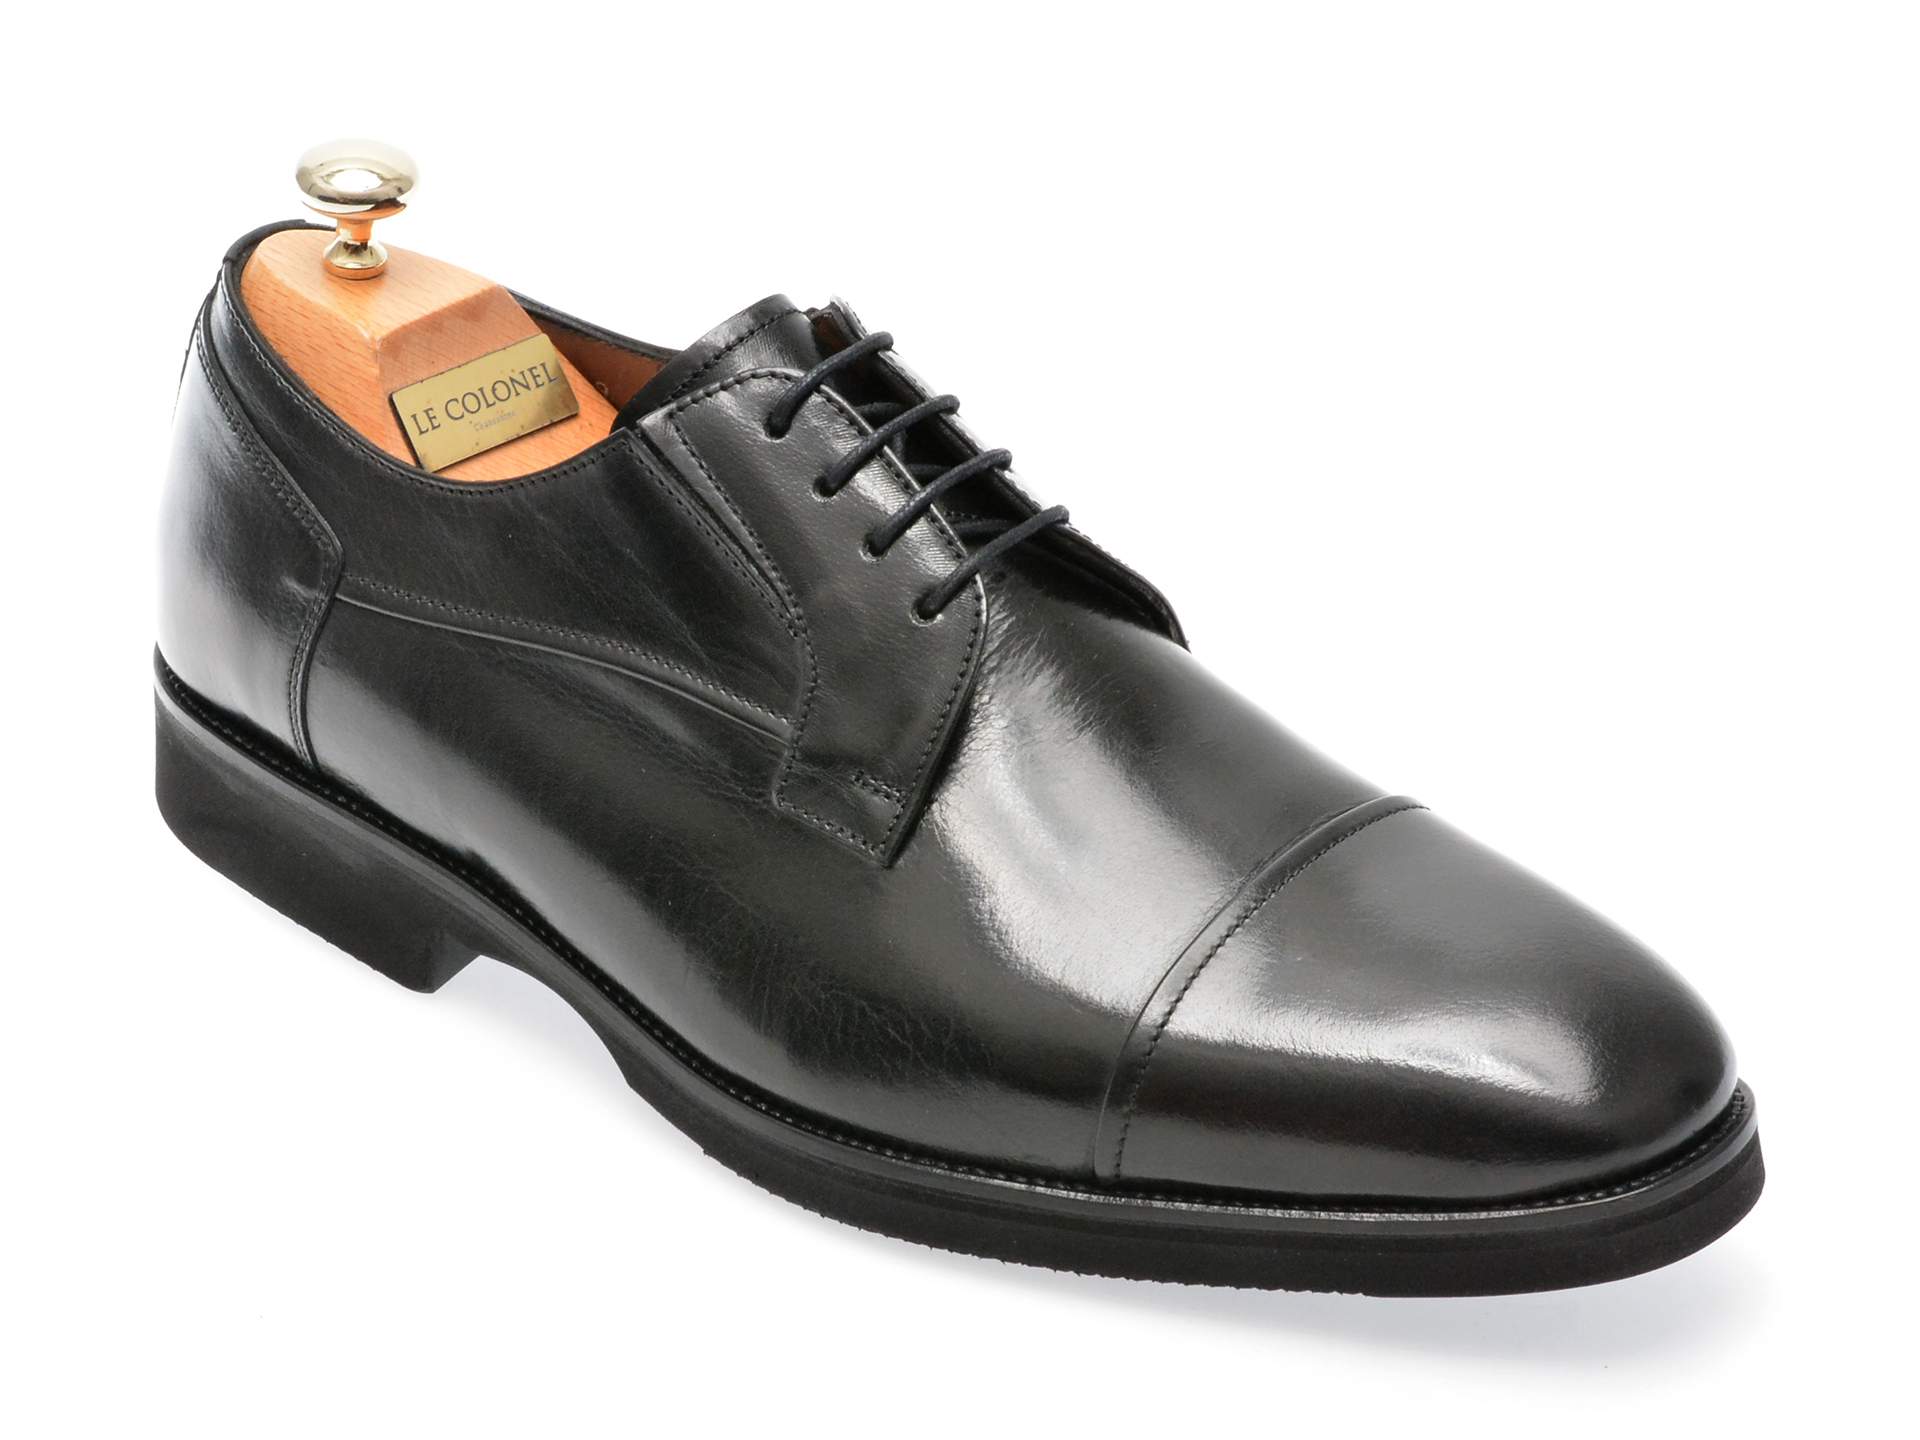 Pantofi LE COLONEL negri, 48409, din piele naturala Le Colonel